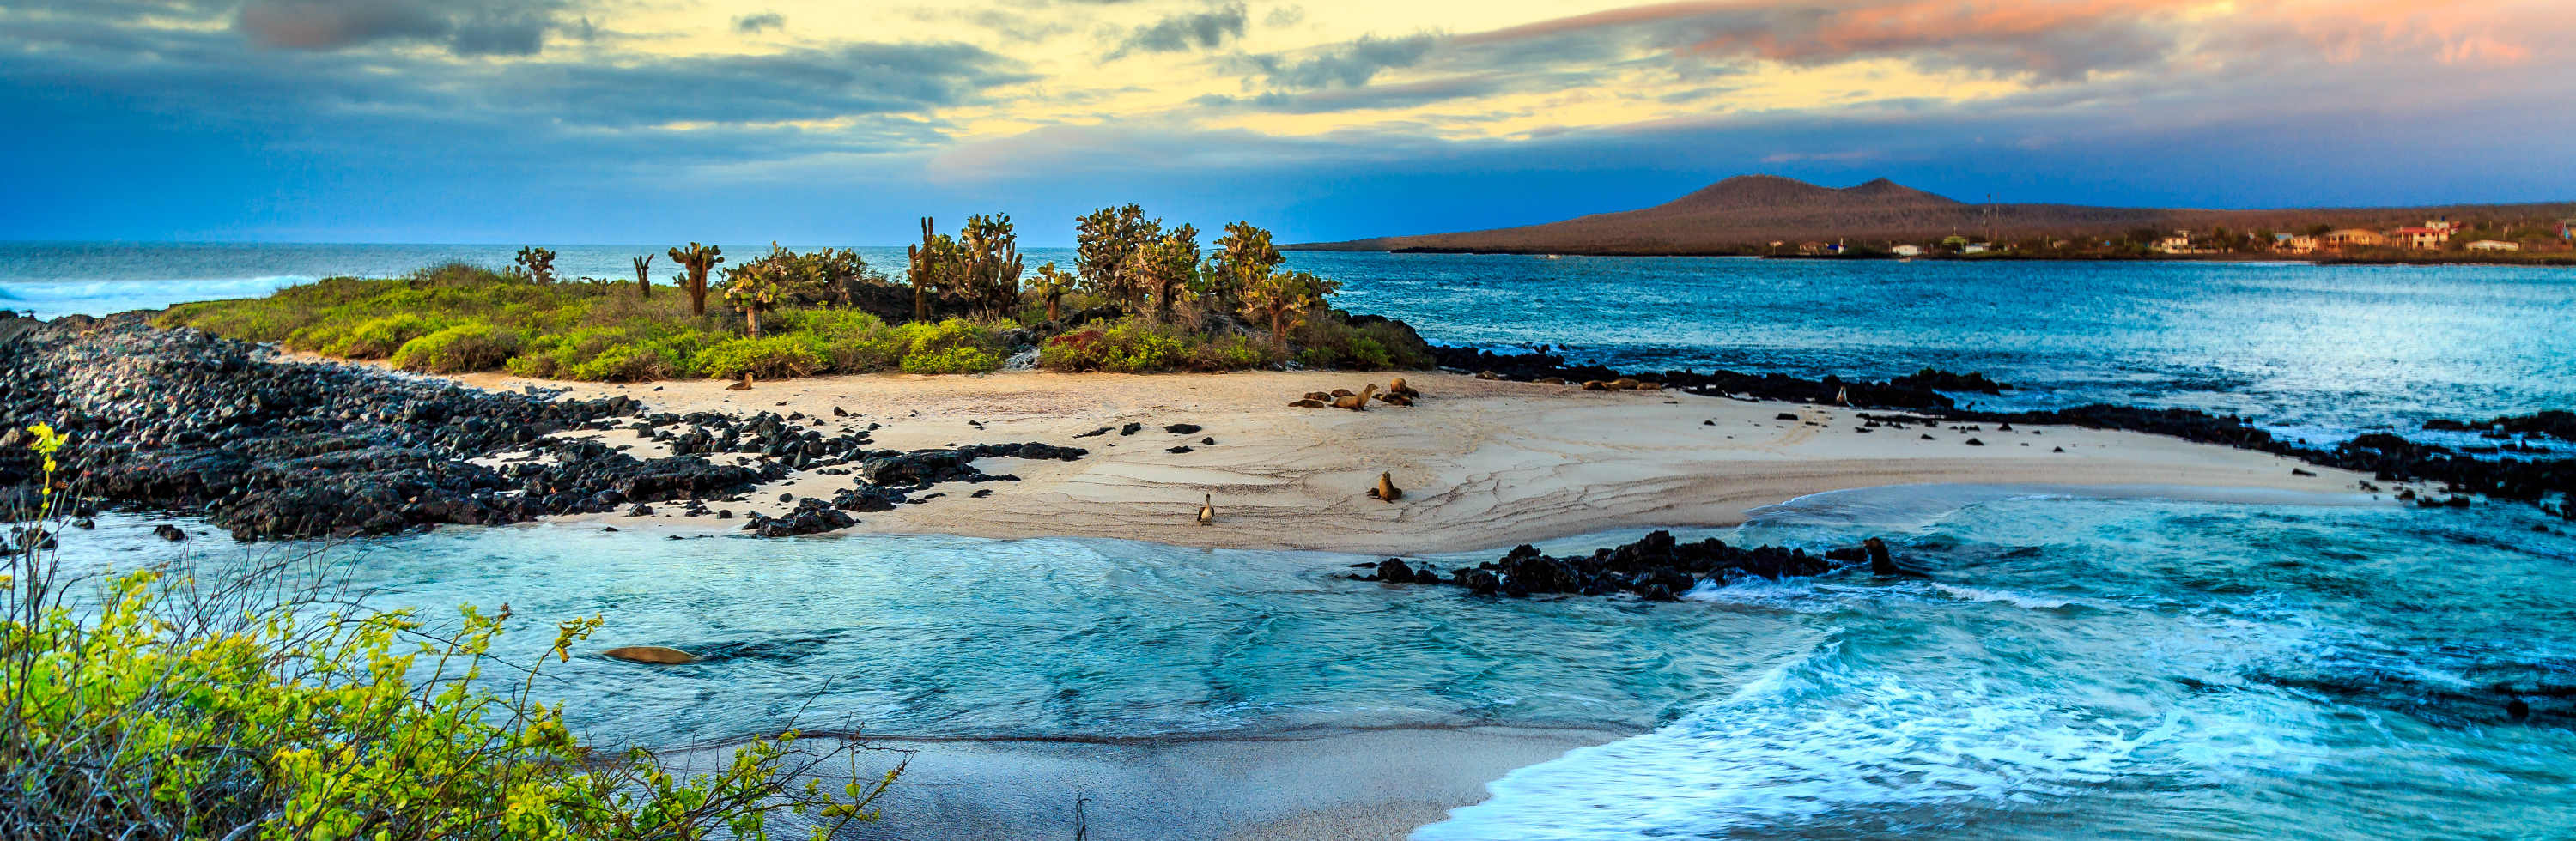 BGYB Destination : Suggestion d'Itinéraire de Croisière aux Galápagos